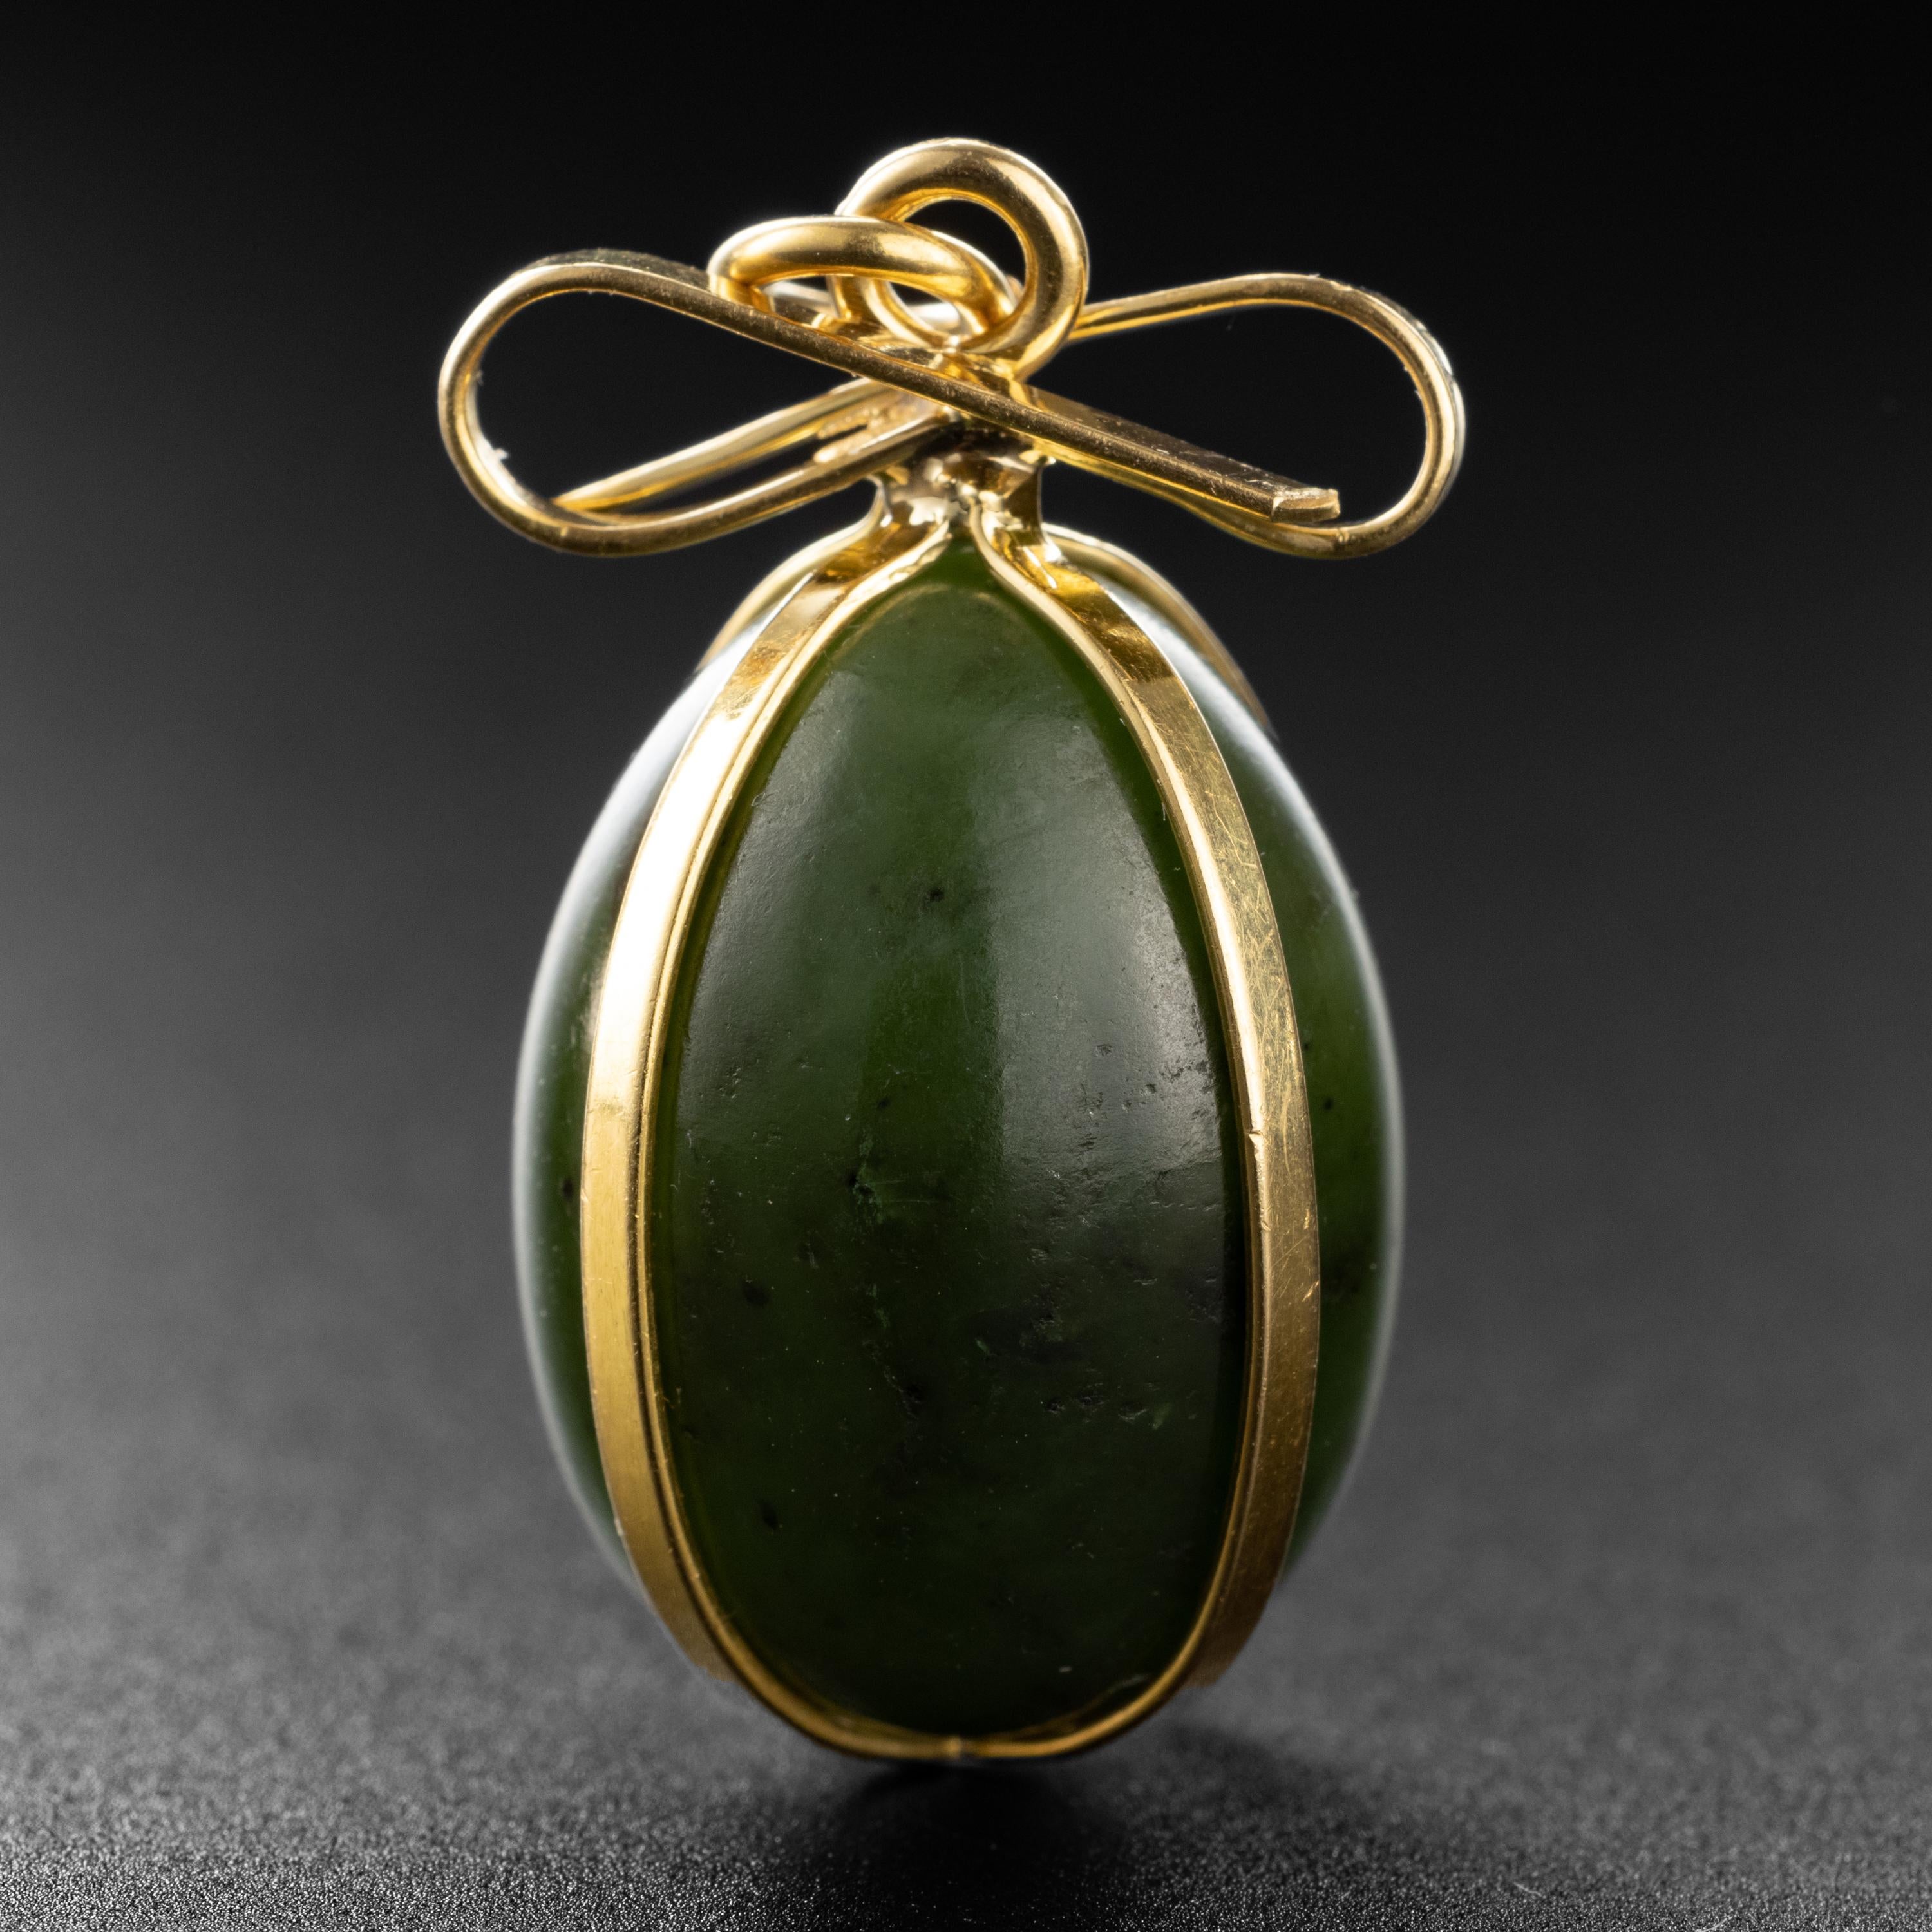 Was für ein Schatz für den Gump's-Sammler und Jade-Liebhaber! Dieses 1970er-Jahre-Schmuckstück des kultigen Einzelhändlers Gump's aus San Francisco besteht aus einem handgeschnitzten, tiefgrünen Nephrit-Jade-Ei, das sicher in Bänder aus